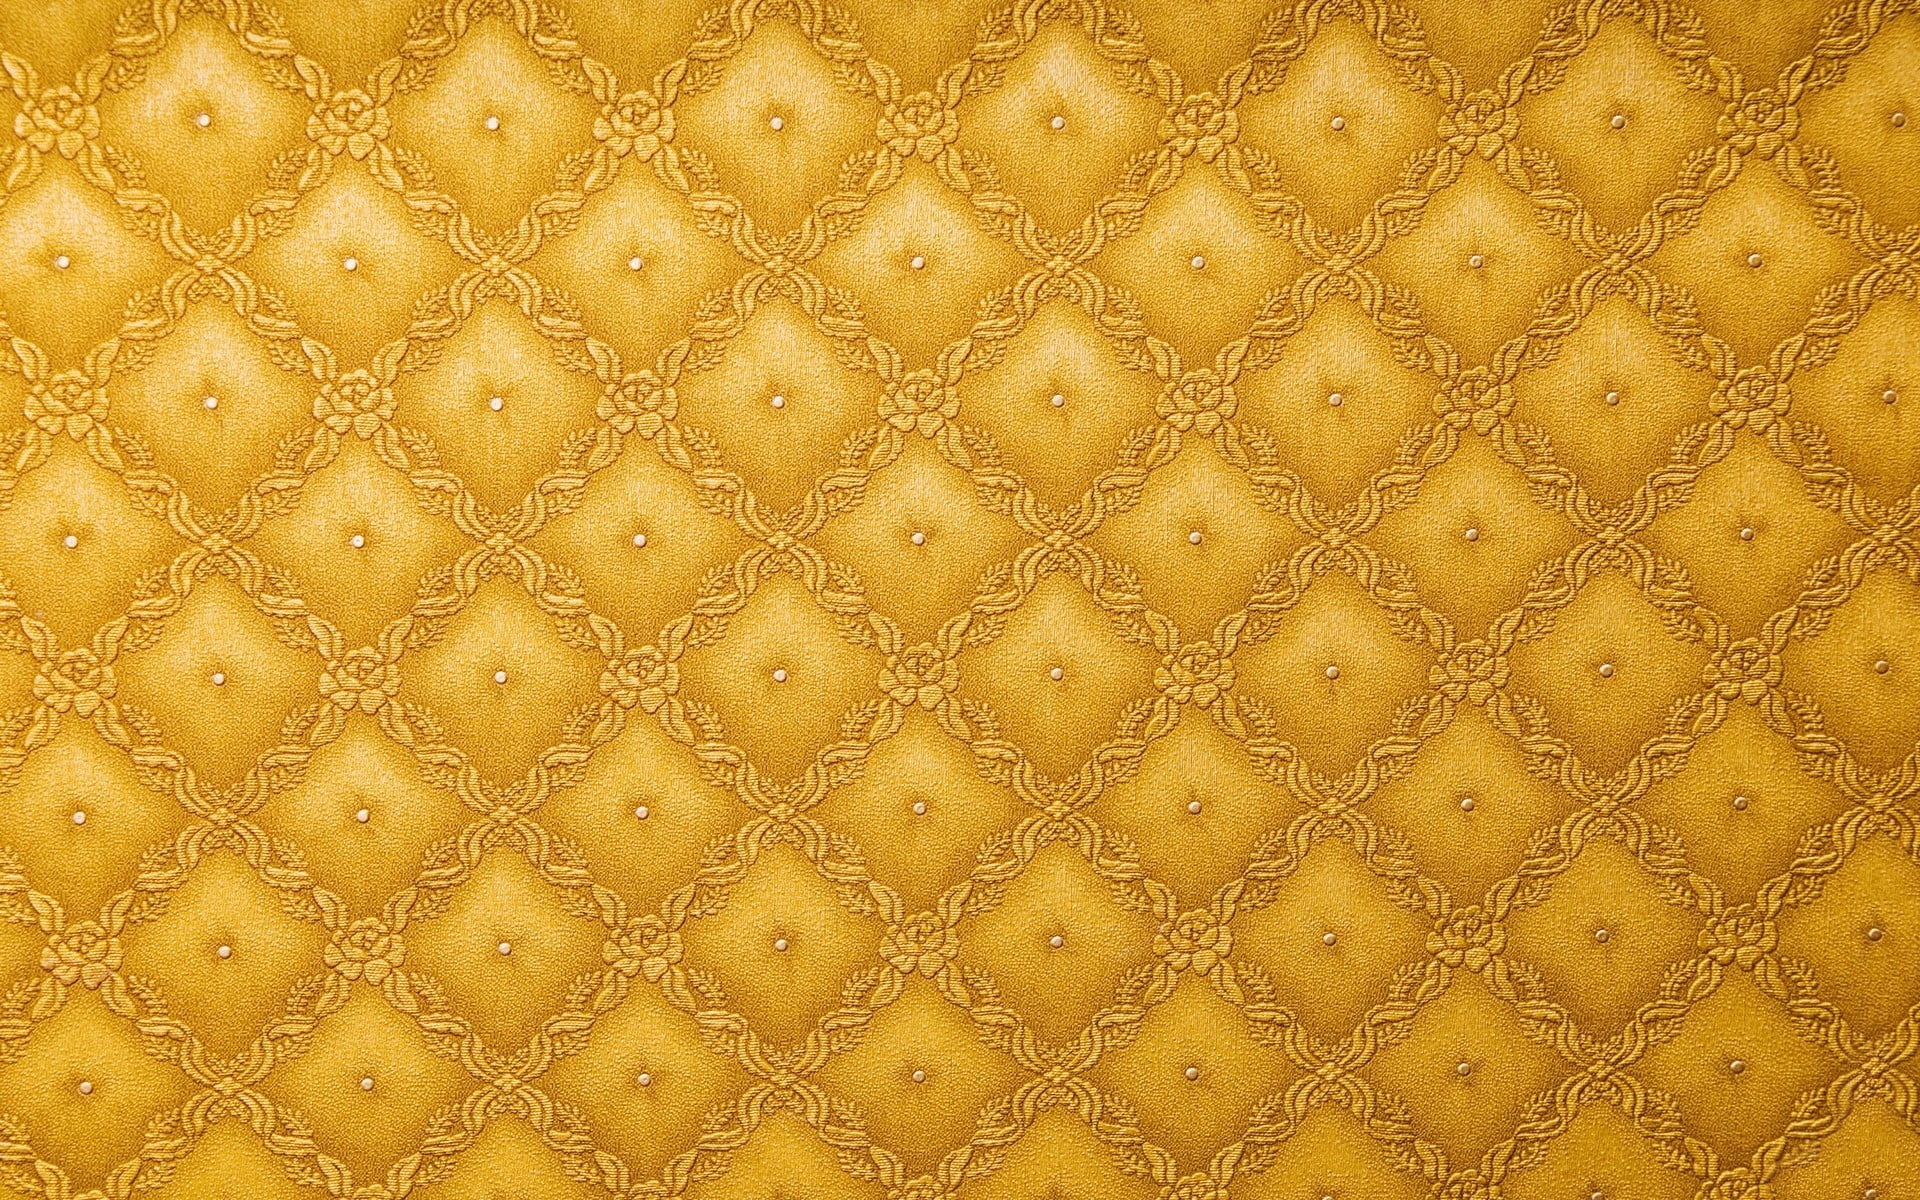 yellow and gray sheet, pattern